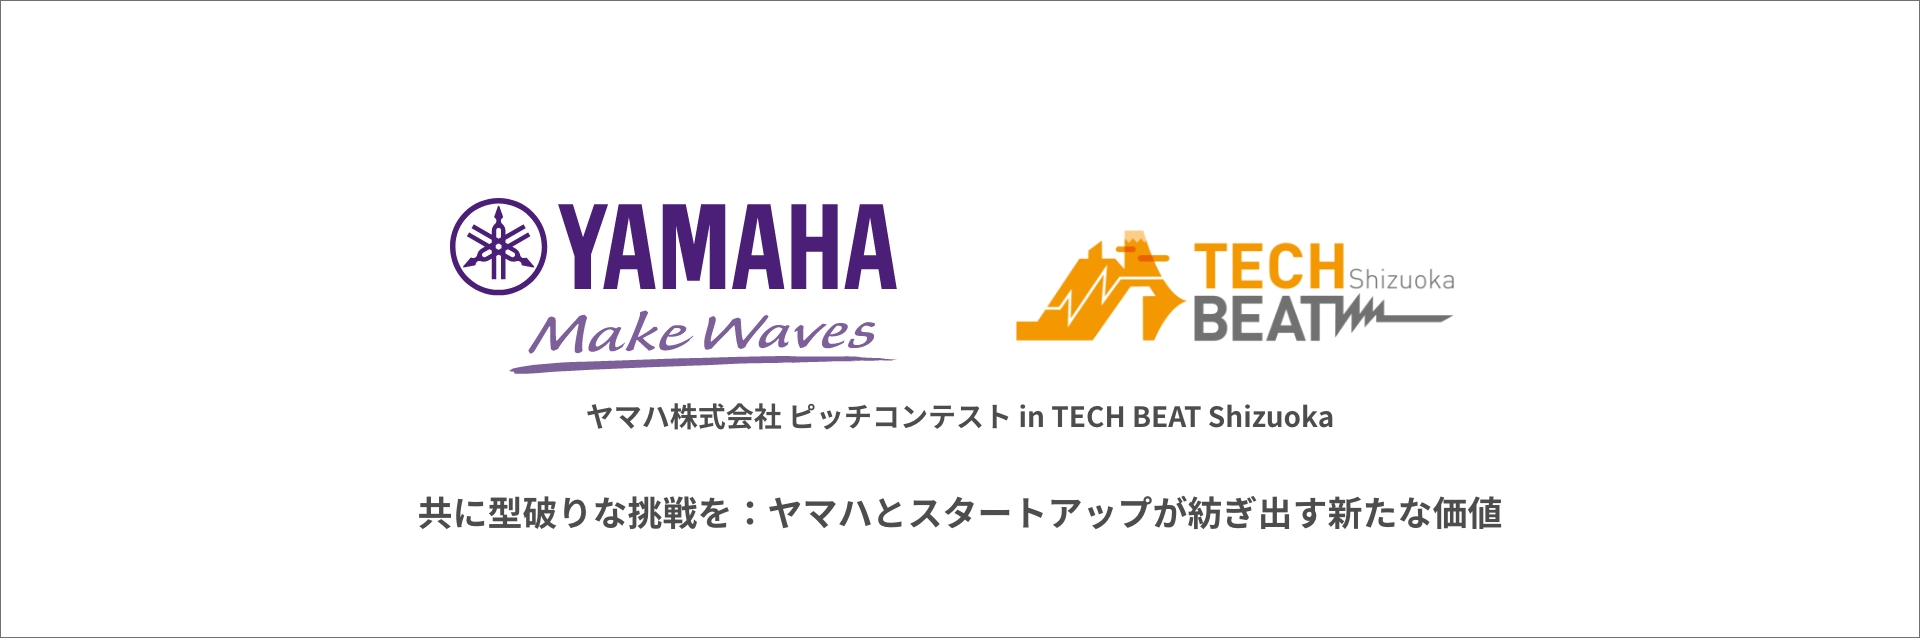 ヤマハ株式会社 TECH BEAT Shizuoka ピッチコンテスト